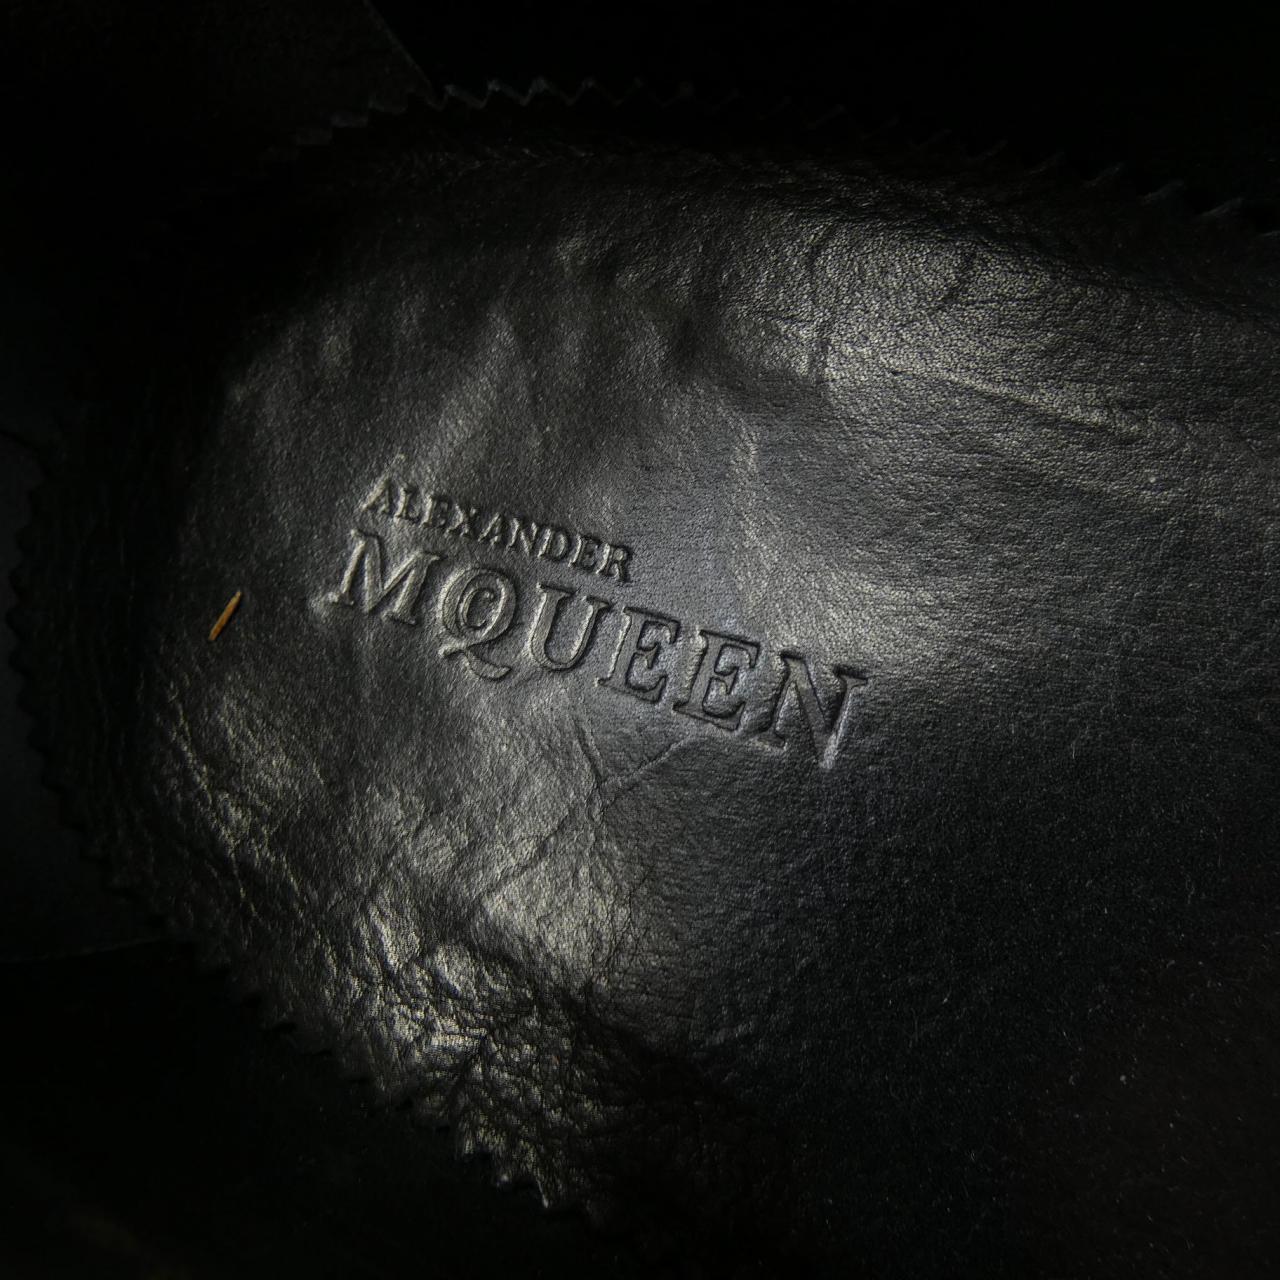 ALEXANDER McQUEEN ALEXANDER McQUEEN Shoes